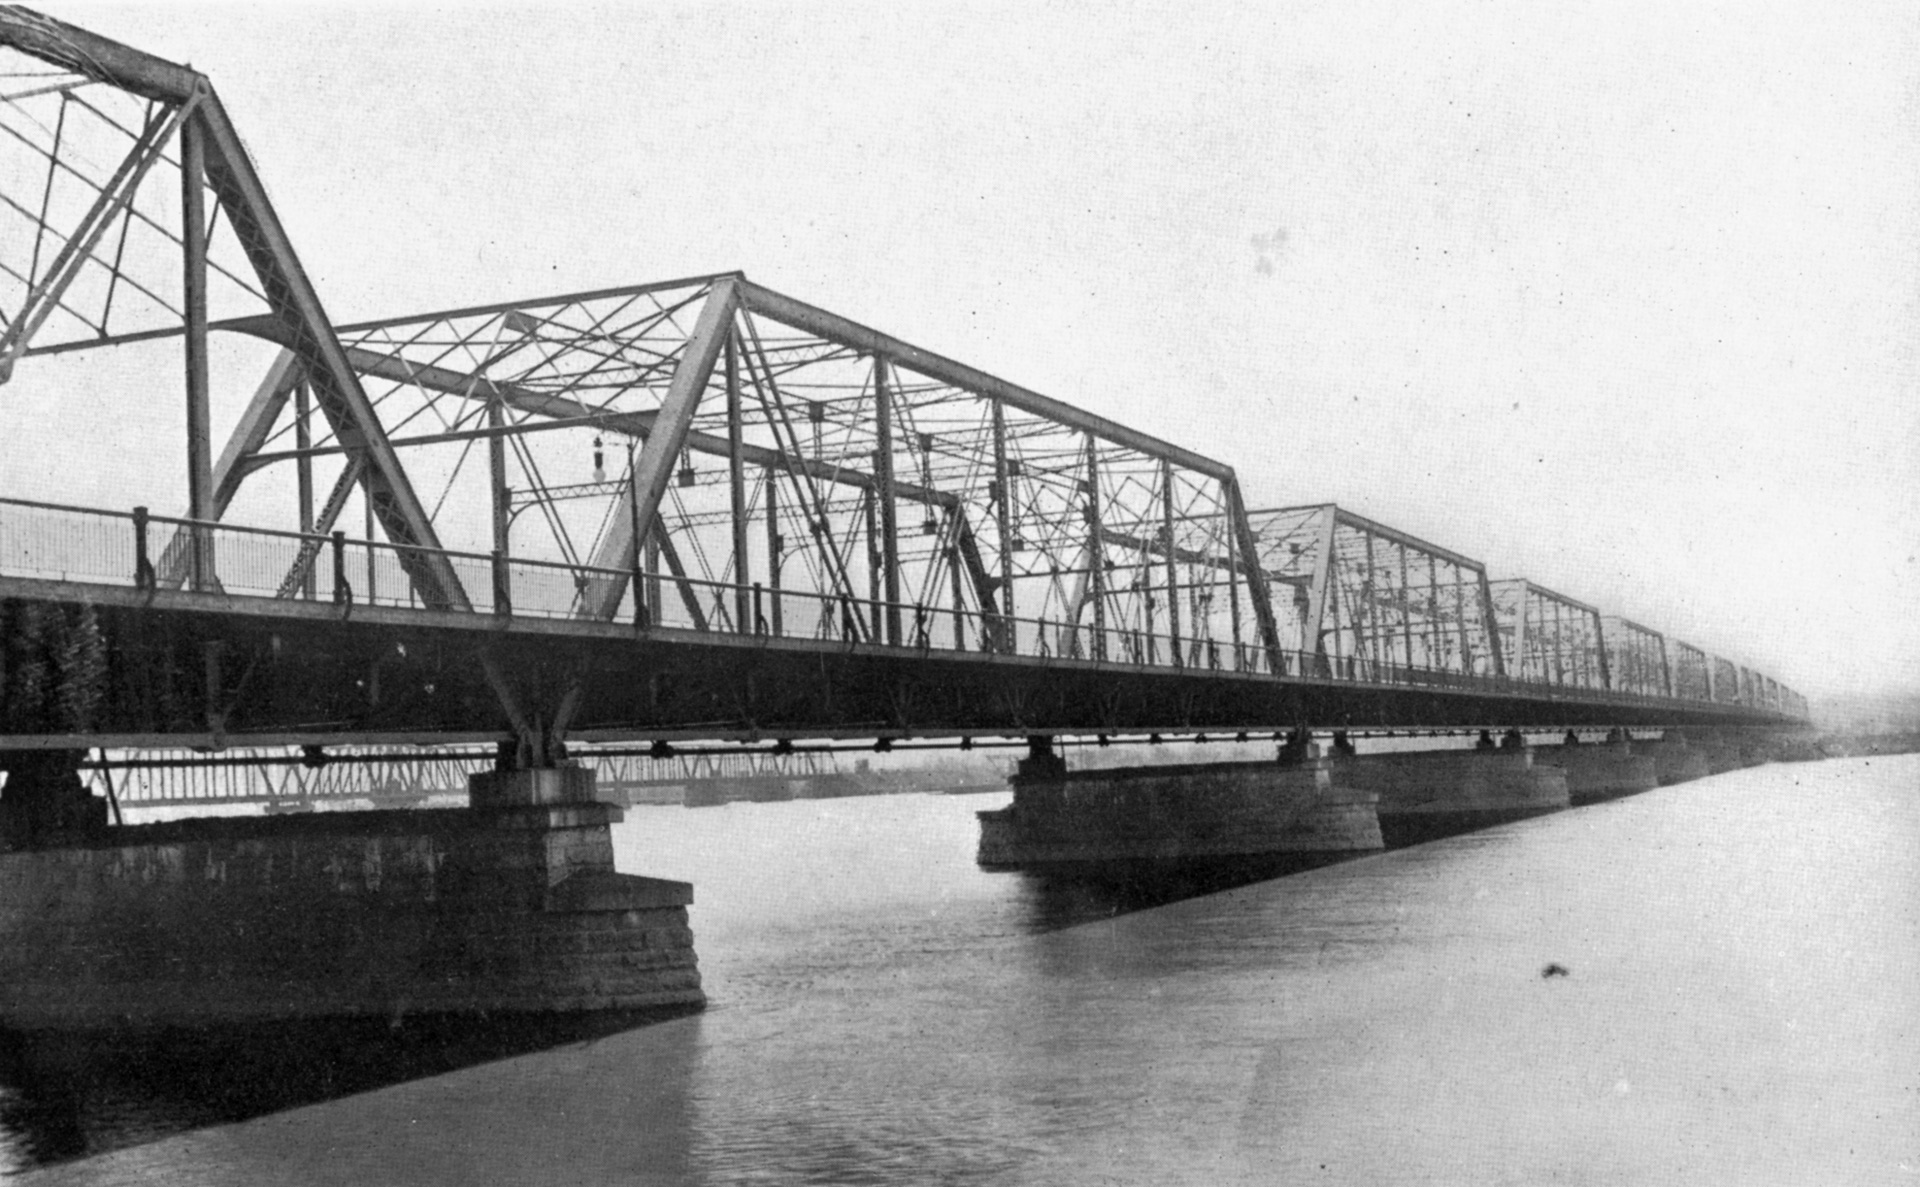 Photograph of a the Long Bridge over the Potomac River in Washington, D.C.